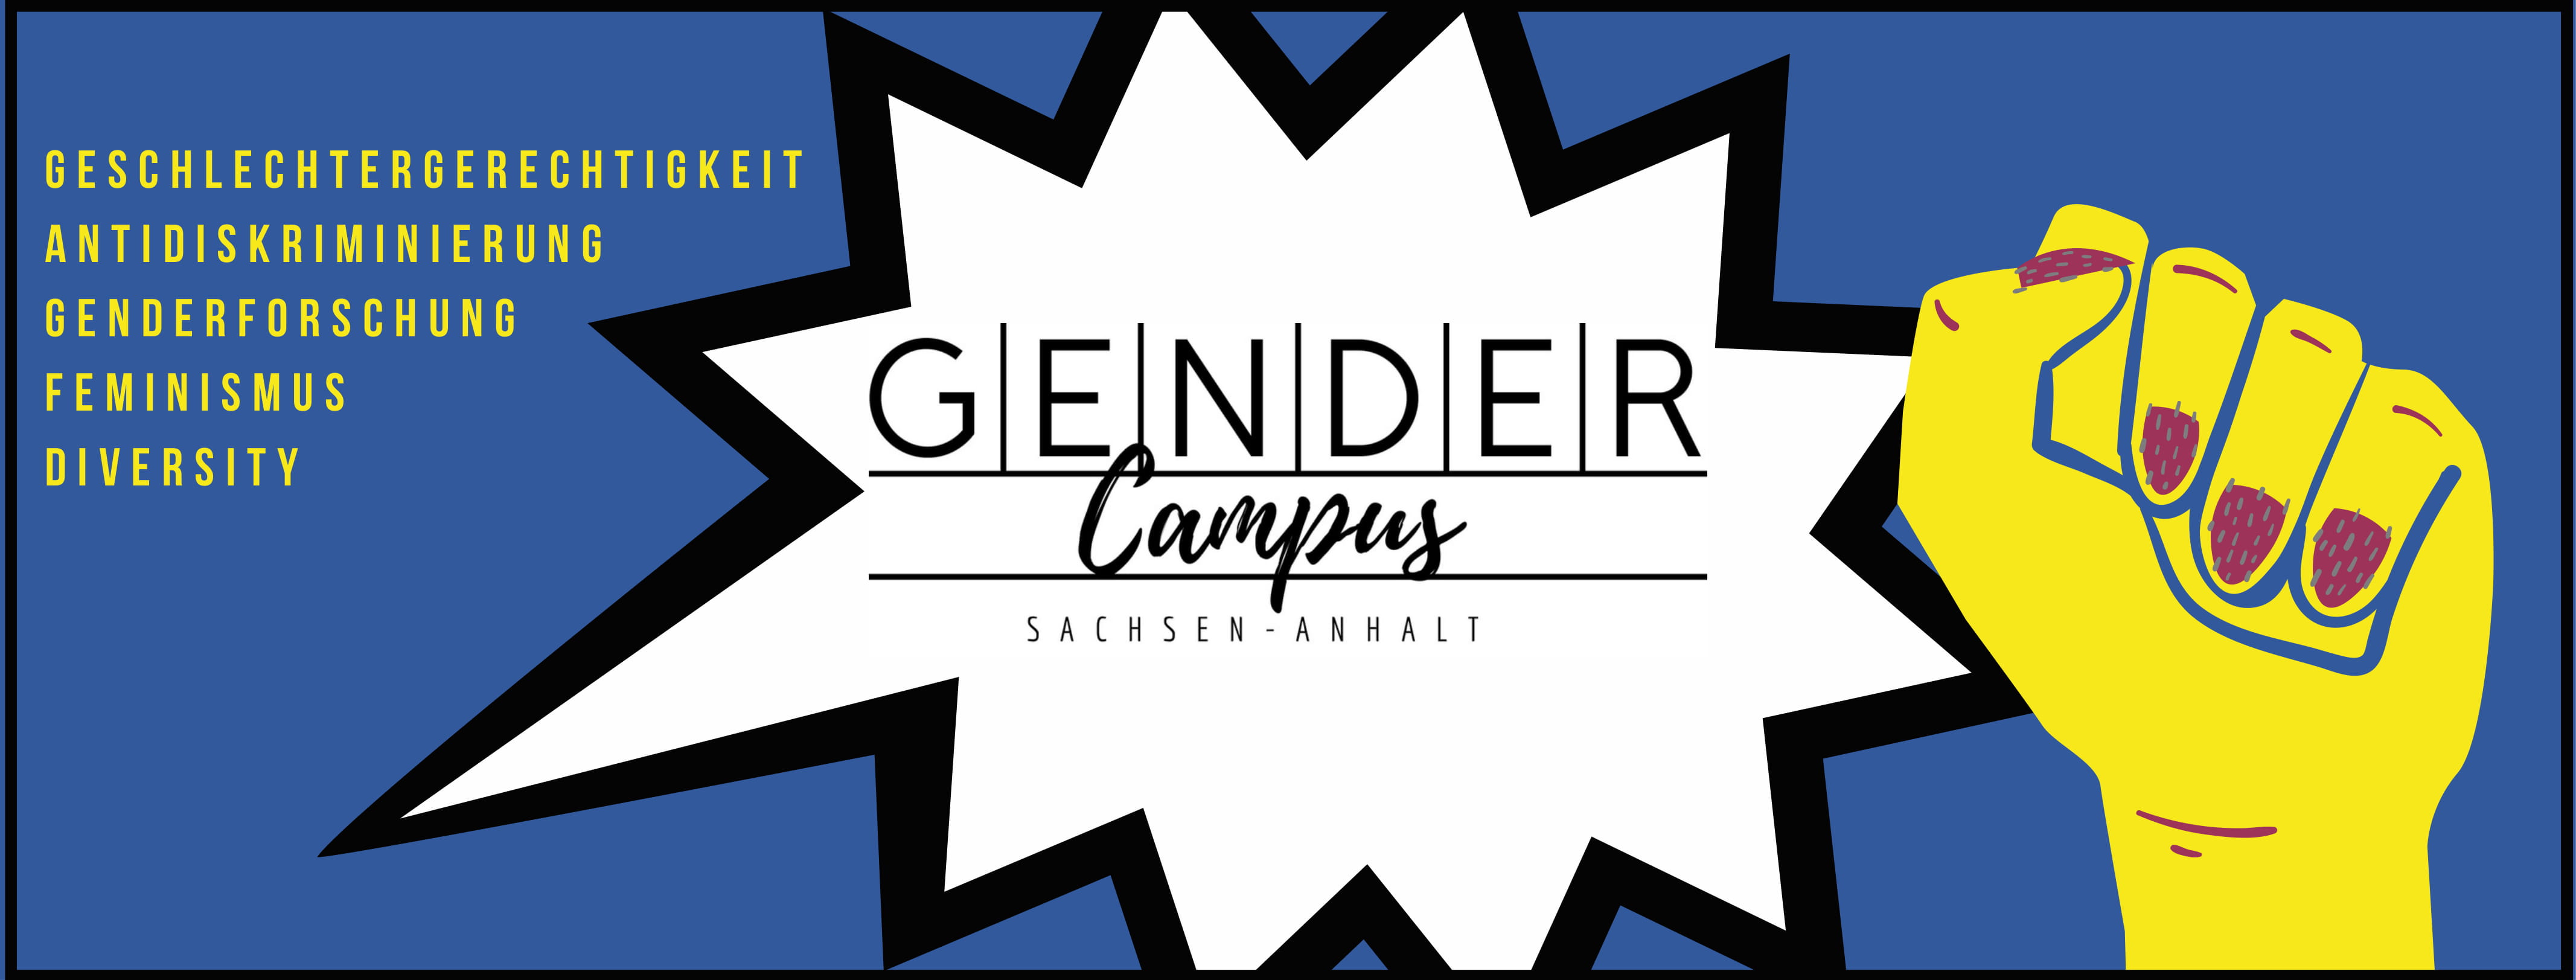 Gendercampus Sachsen-Anhalt_Header_neu